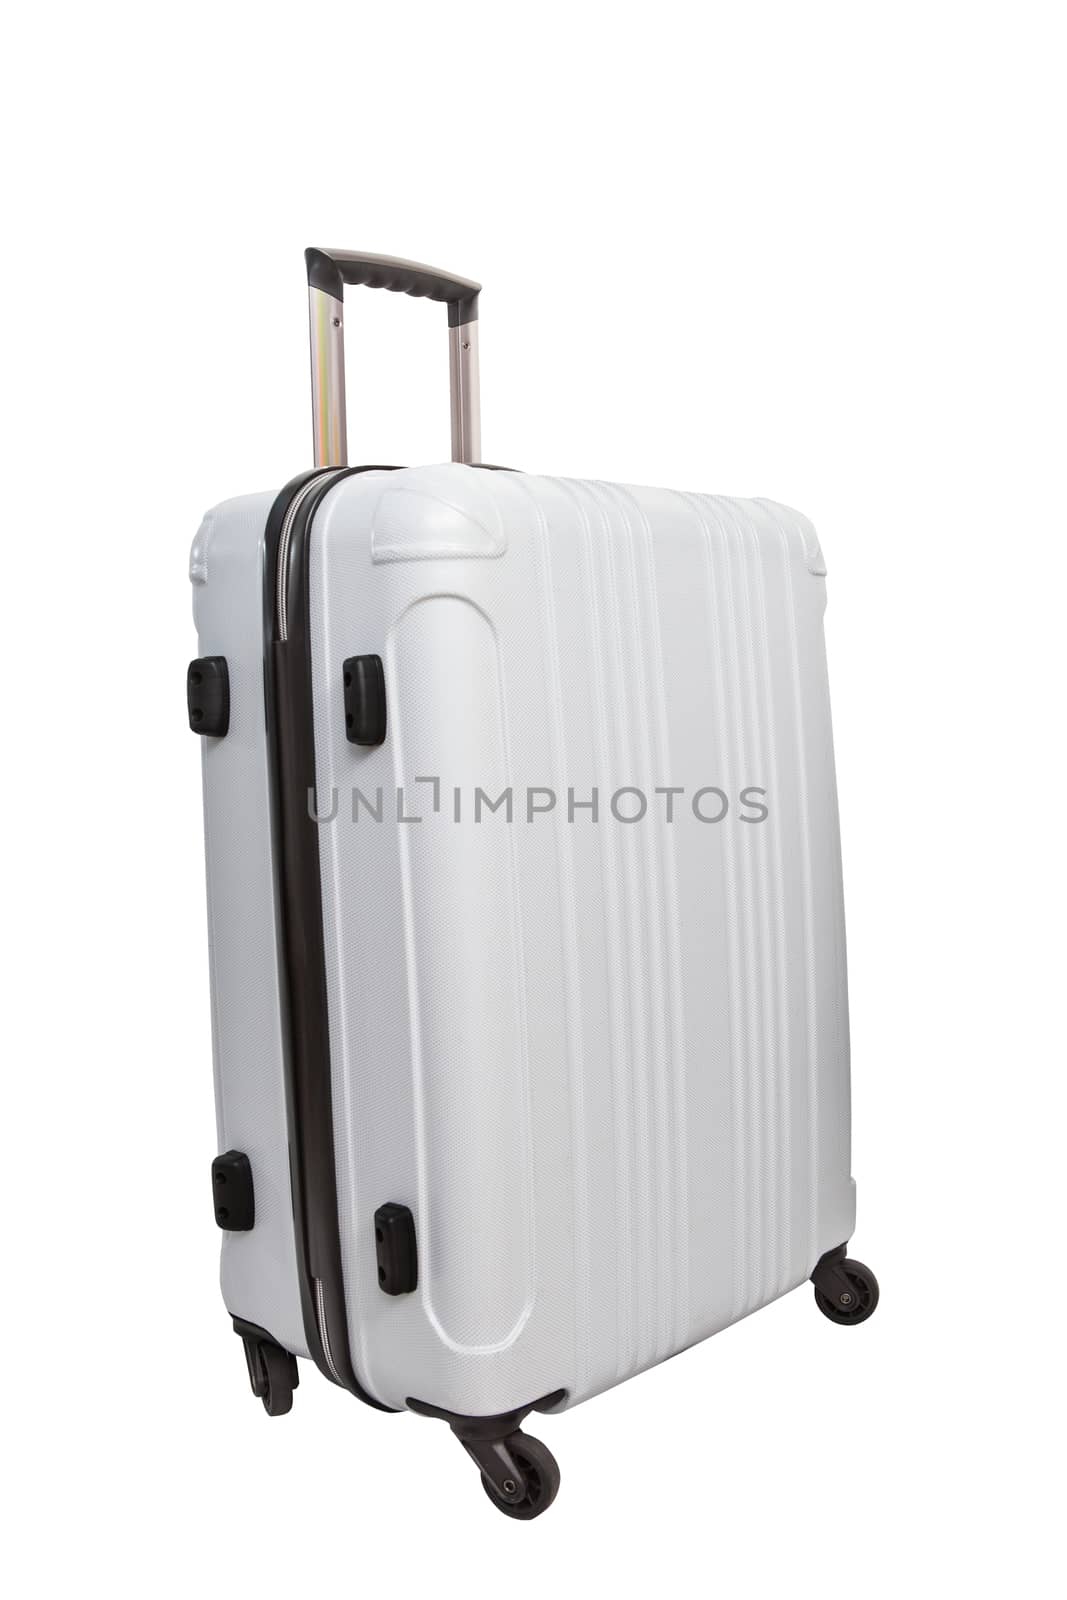 white luggage traveling suitcase isolated white background